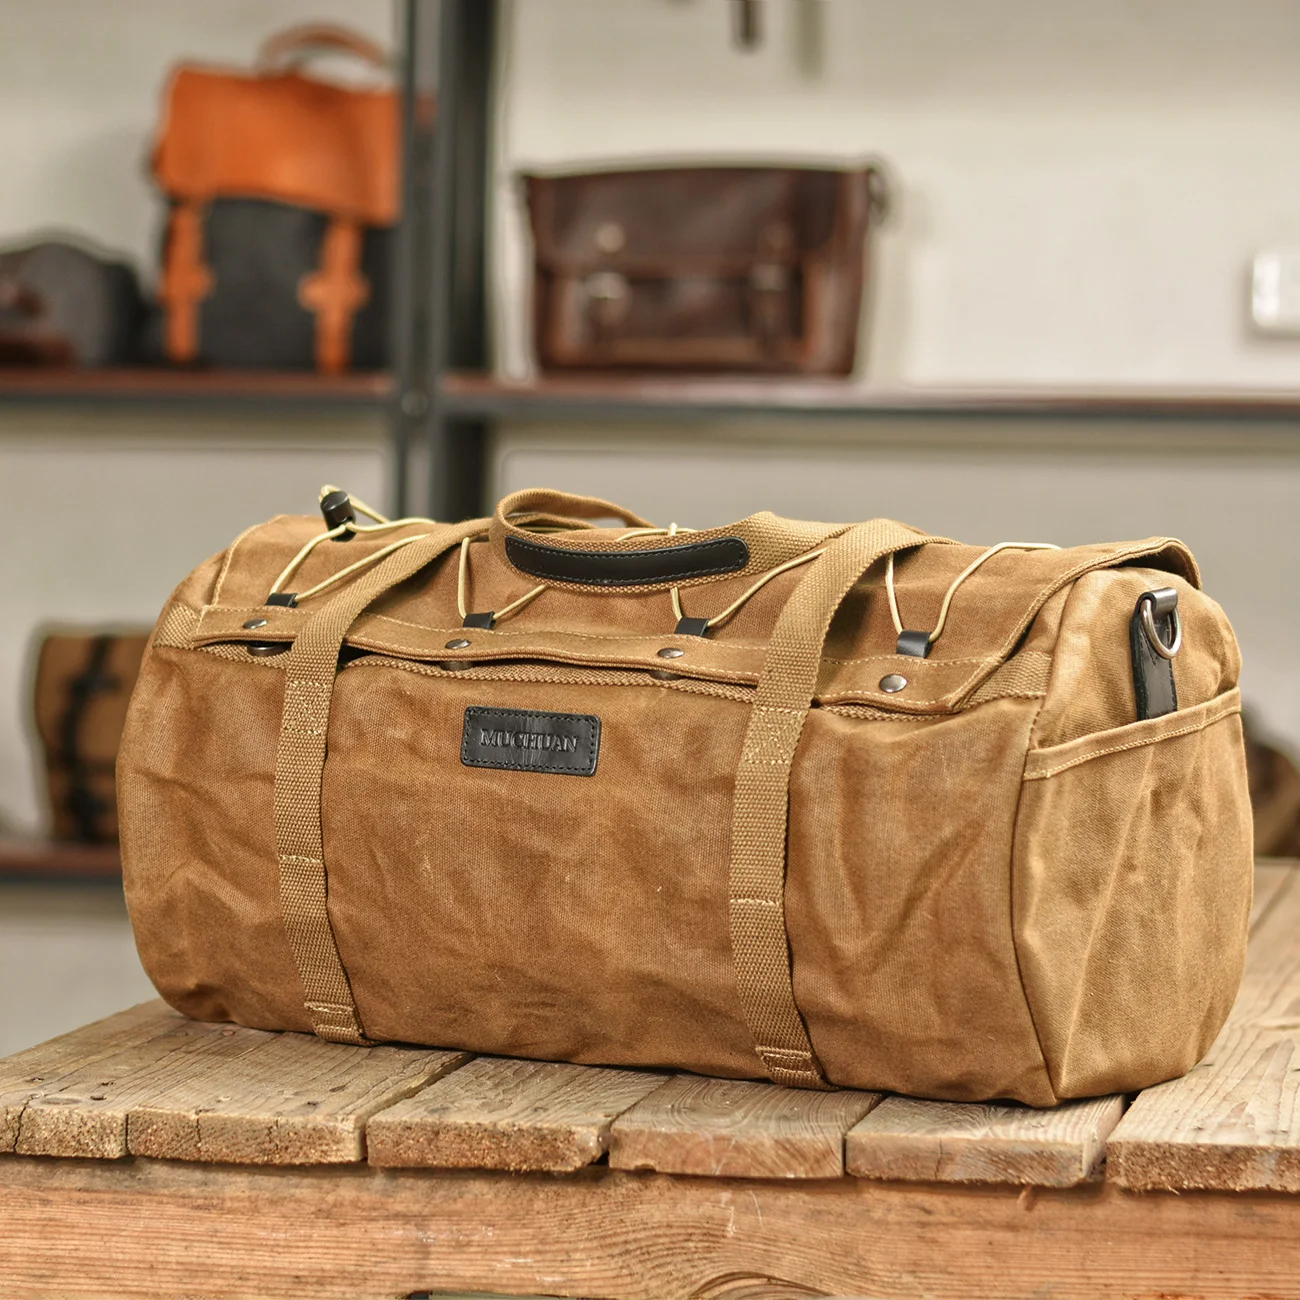 Men's Sports Leisure Portable Travel Bag Fitness Bag Men's Short-distance Business Shoulder Luggage Bag Outdoor Travel Tote Bag